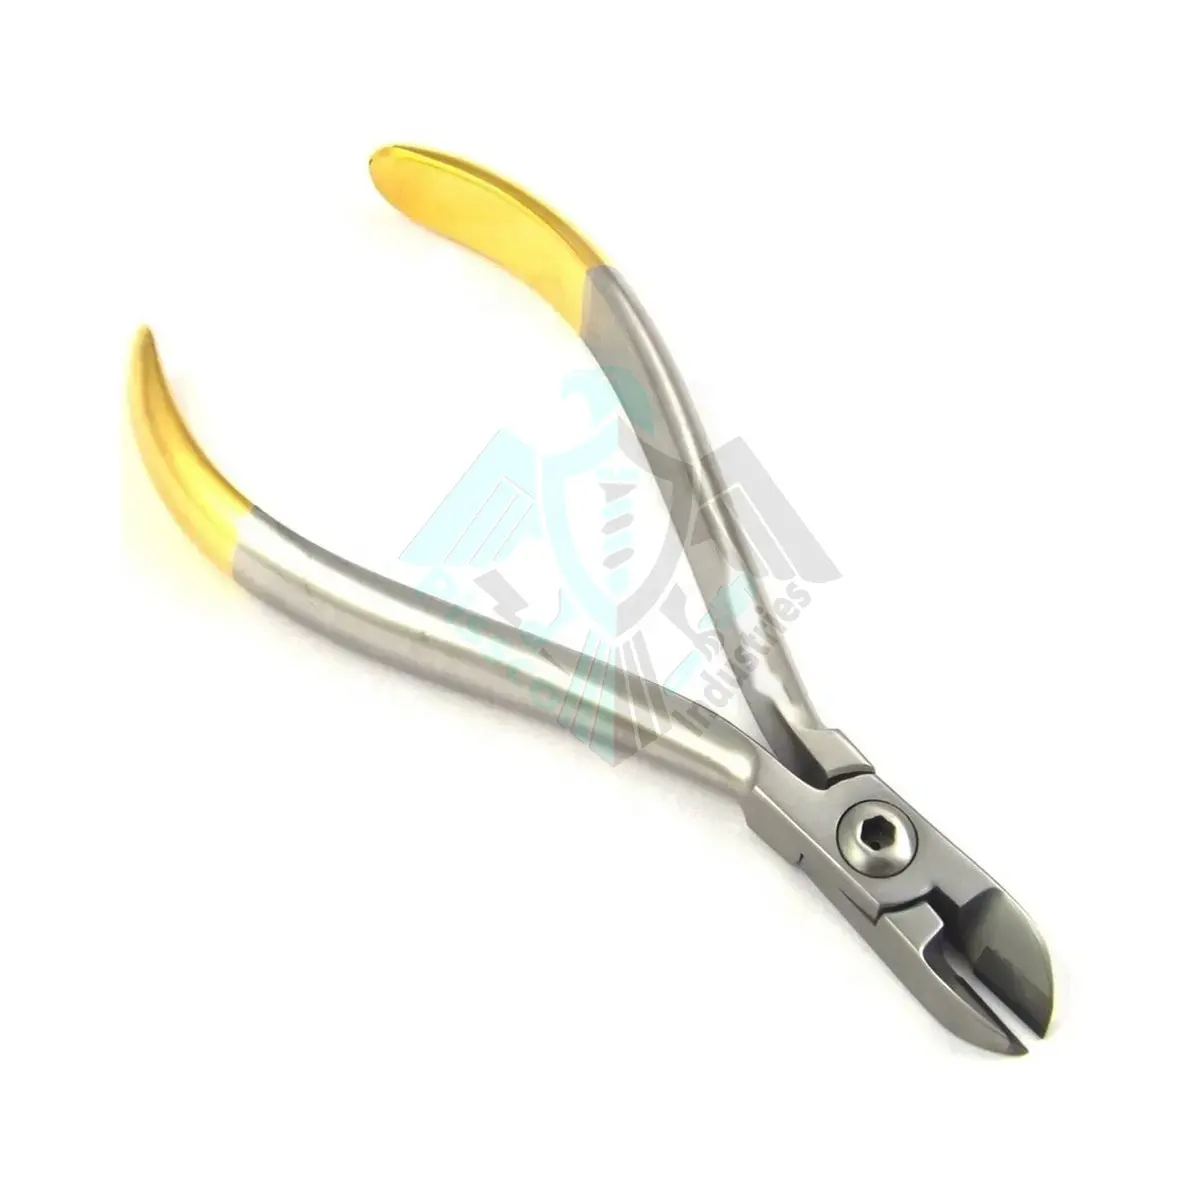 Fornitore all'ingrosso Pissco per taglierina a filo duro ortodontico Ortho Dental Instruments acciaio inossidabile tedesco